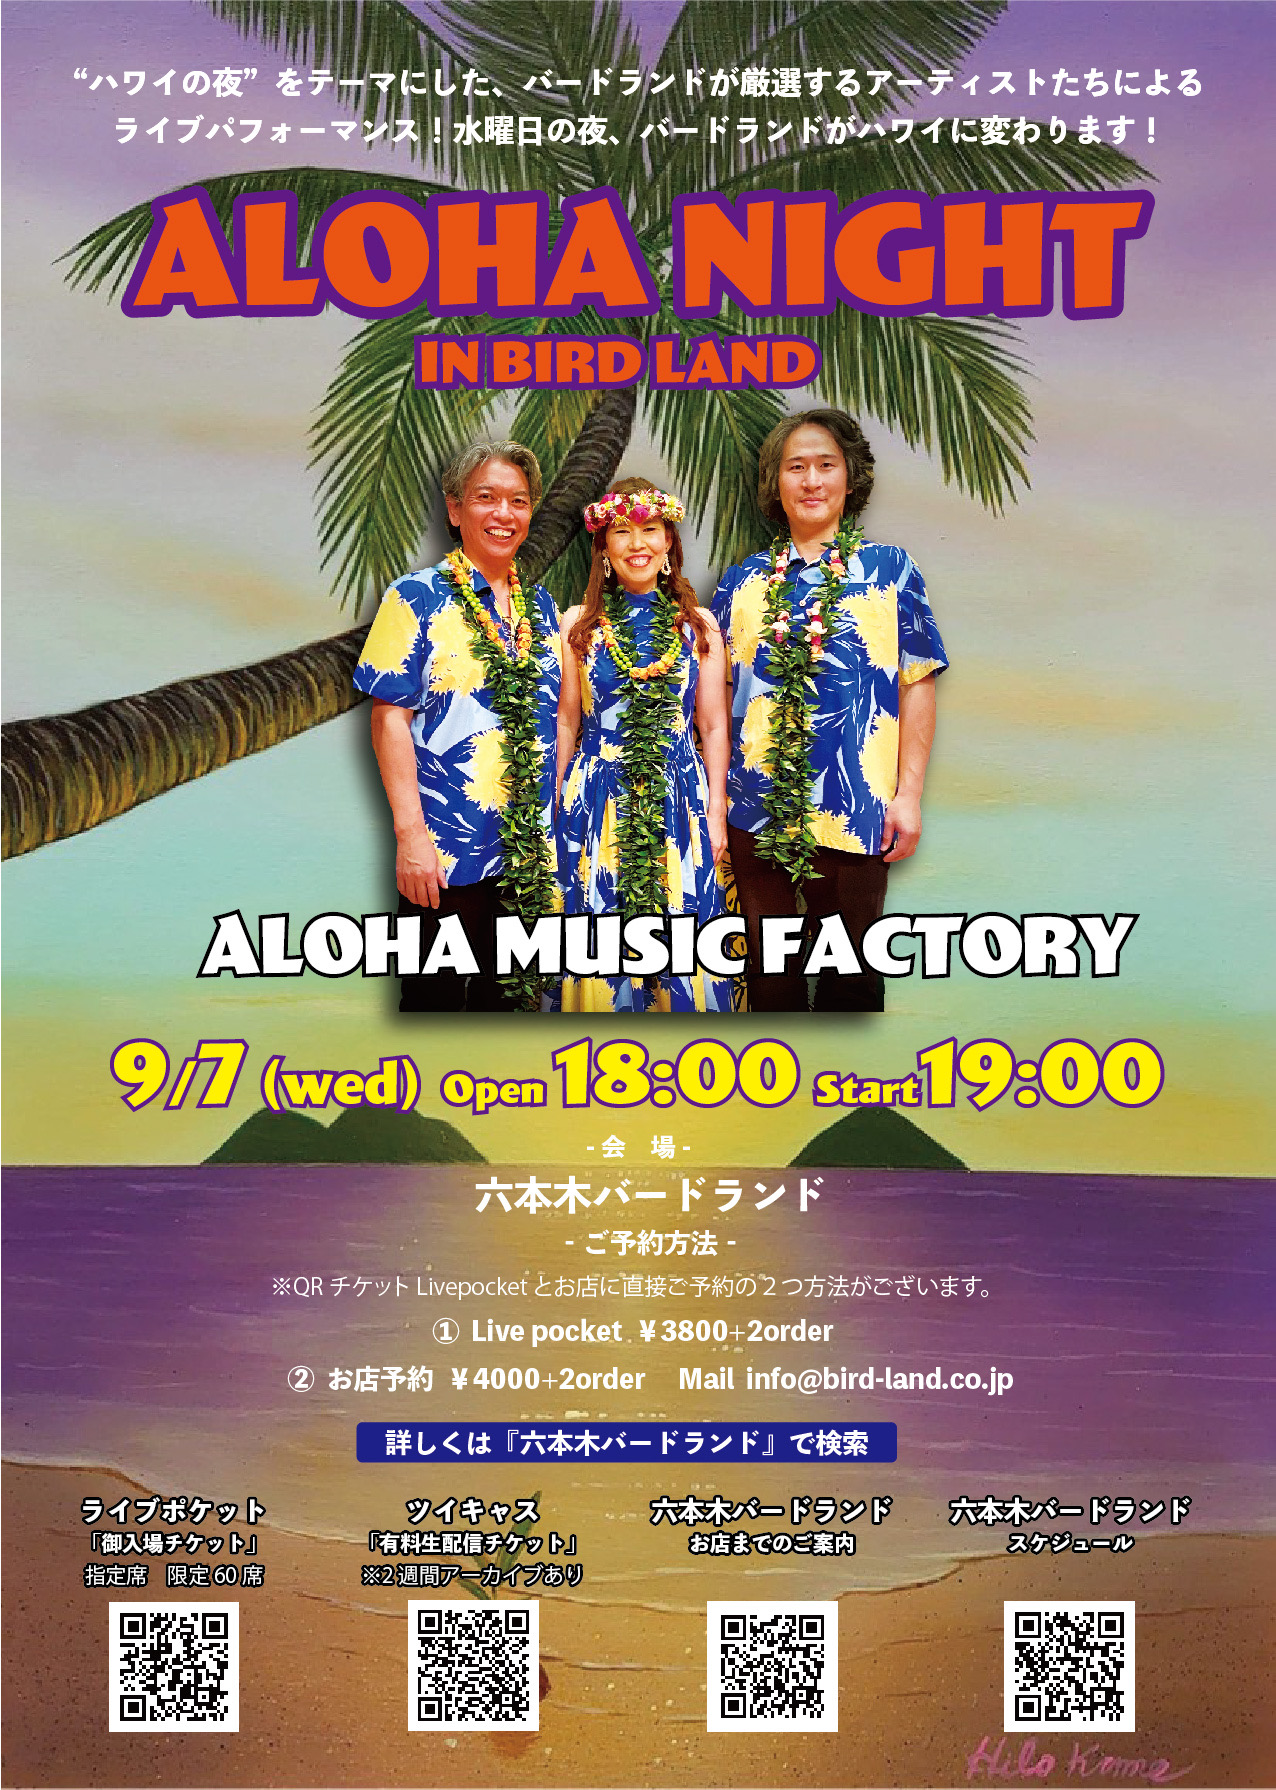 Aloha Night in BIRDLAND ~ ALOHA MUSIC FACTORY